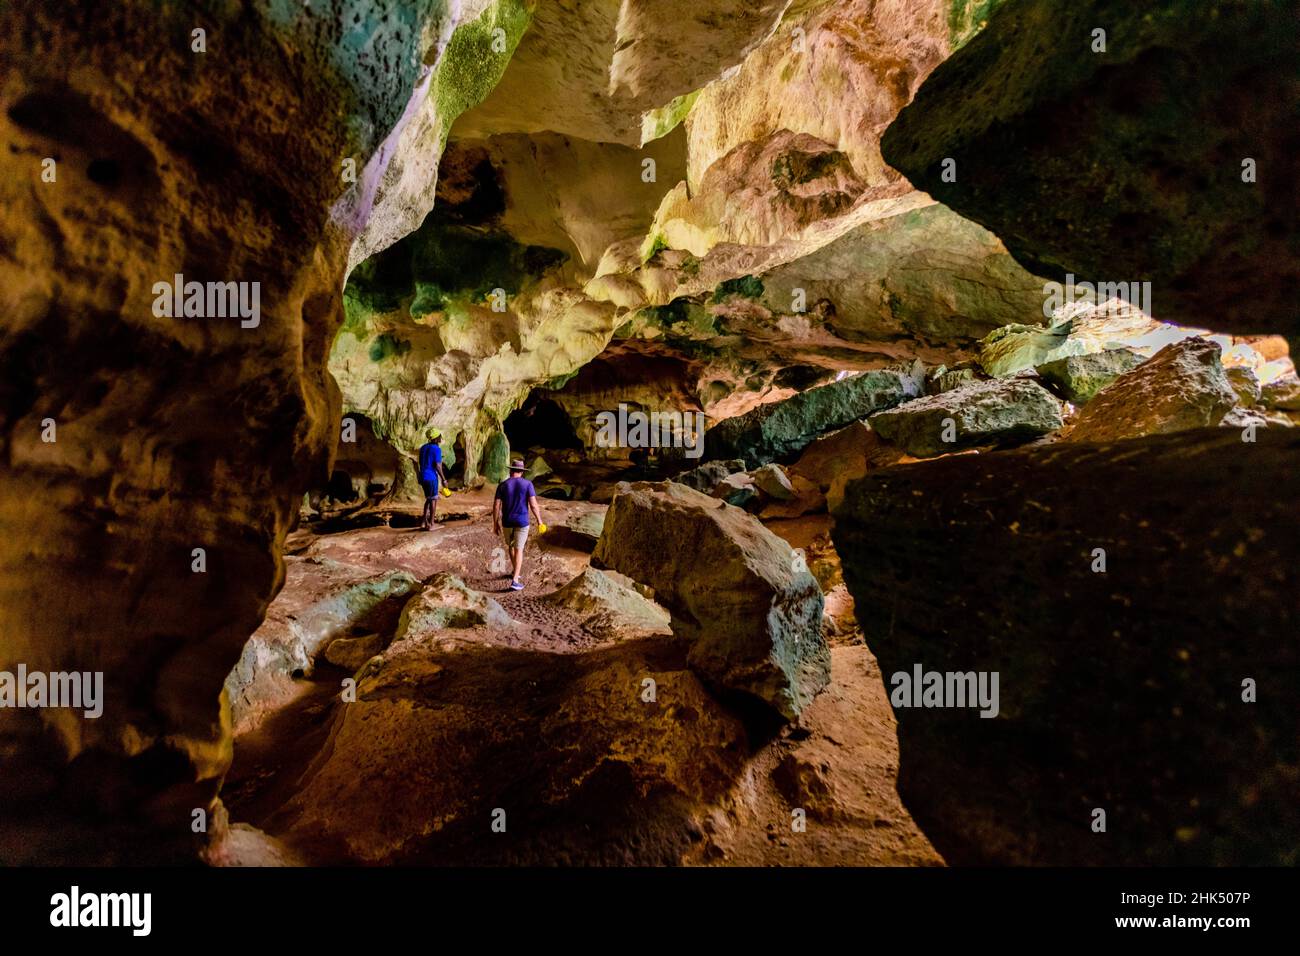 Personnes explorant des grottes marines sur les îles du Nord, des Turks et Caicos, de l'Atlantique, de l'Amérique centrale Banque D'Images